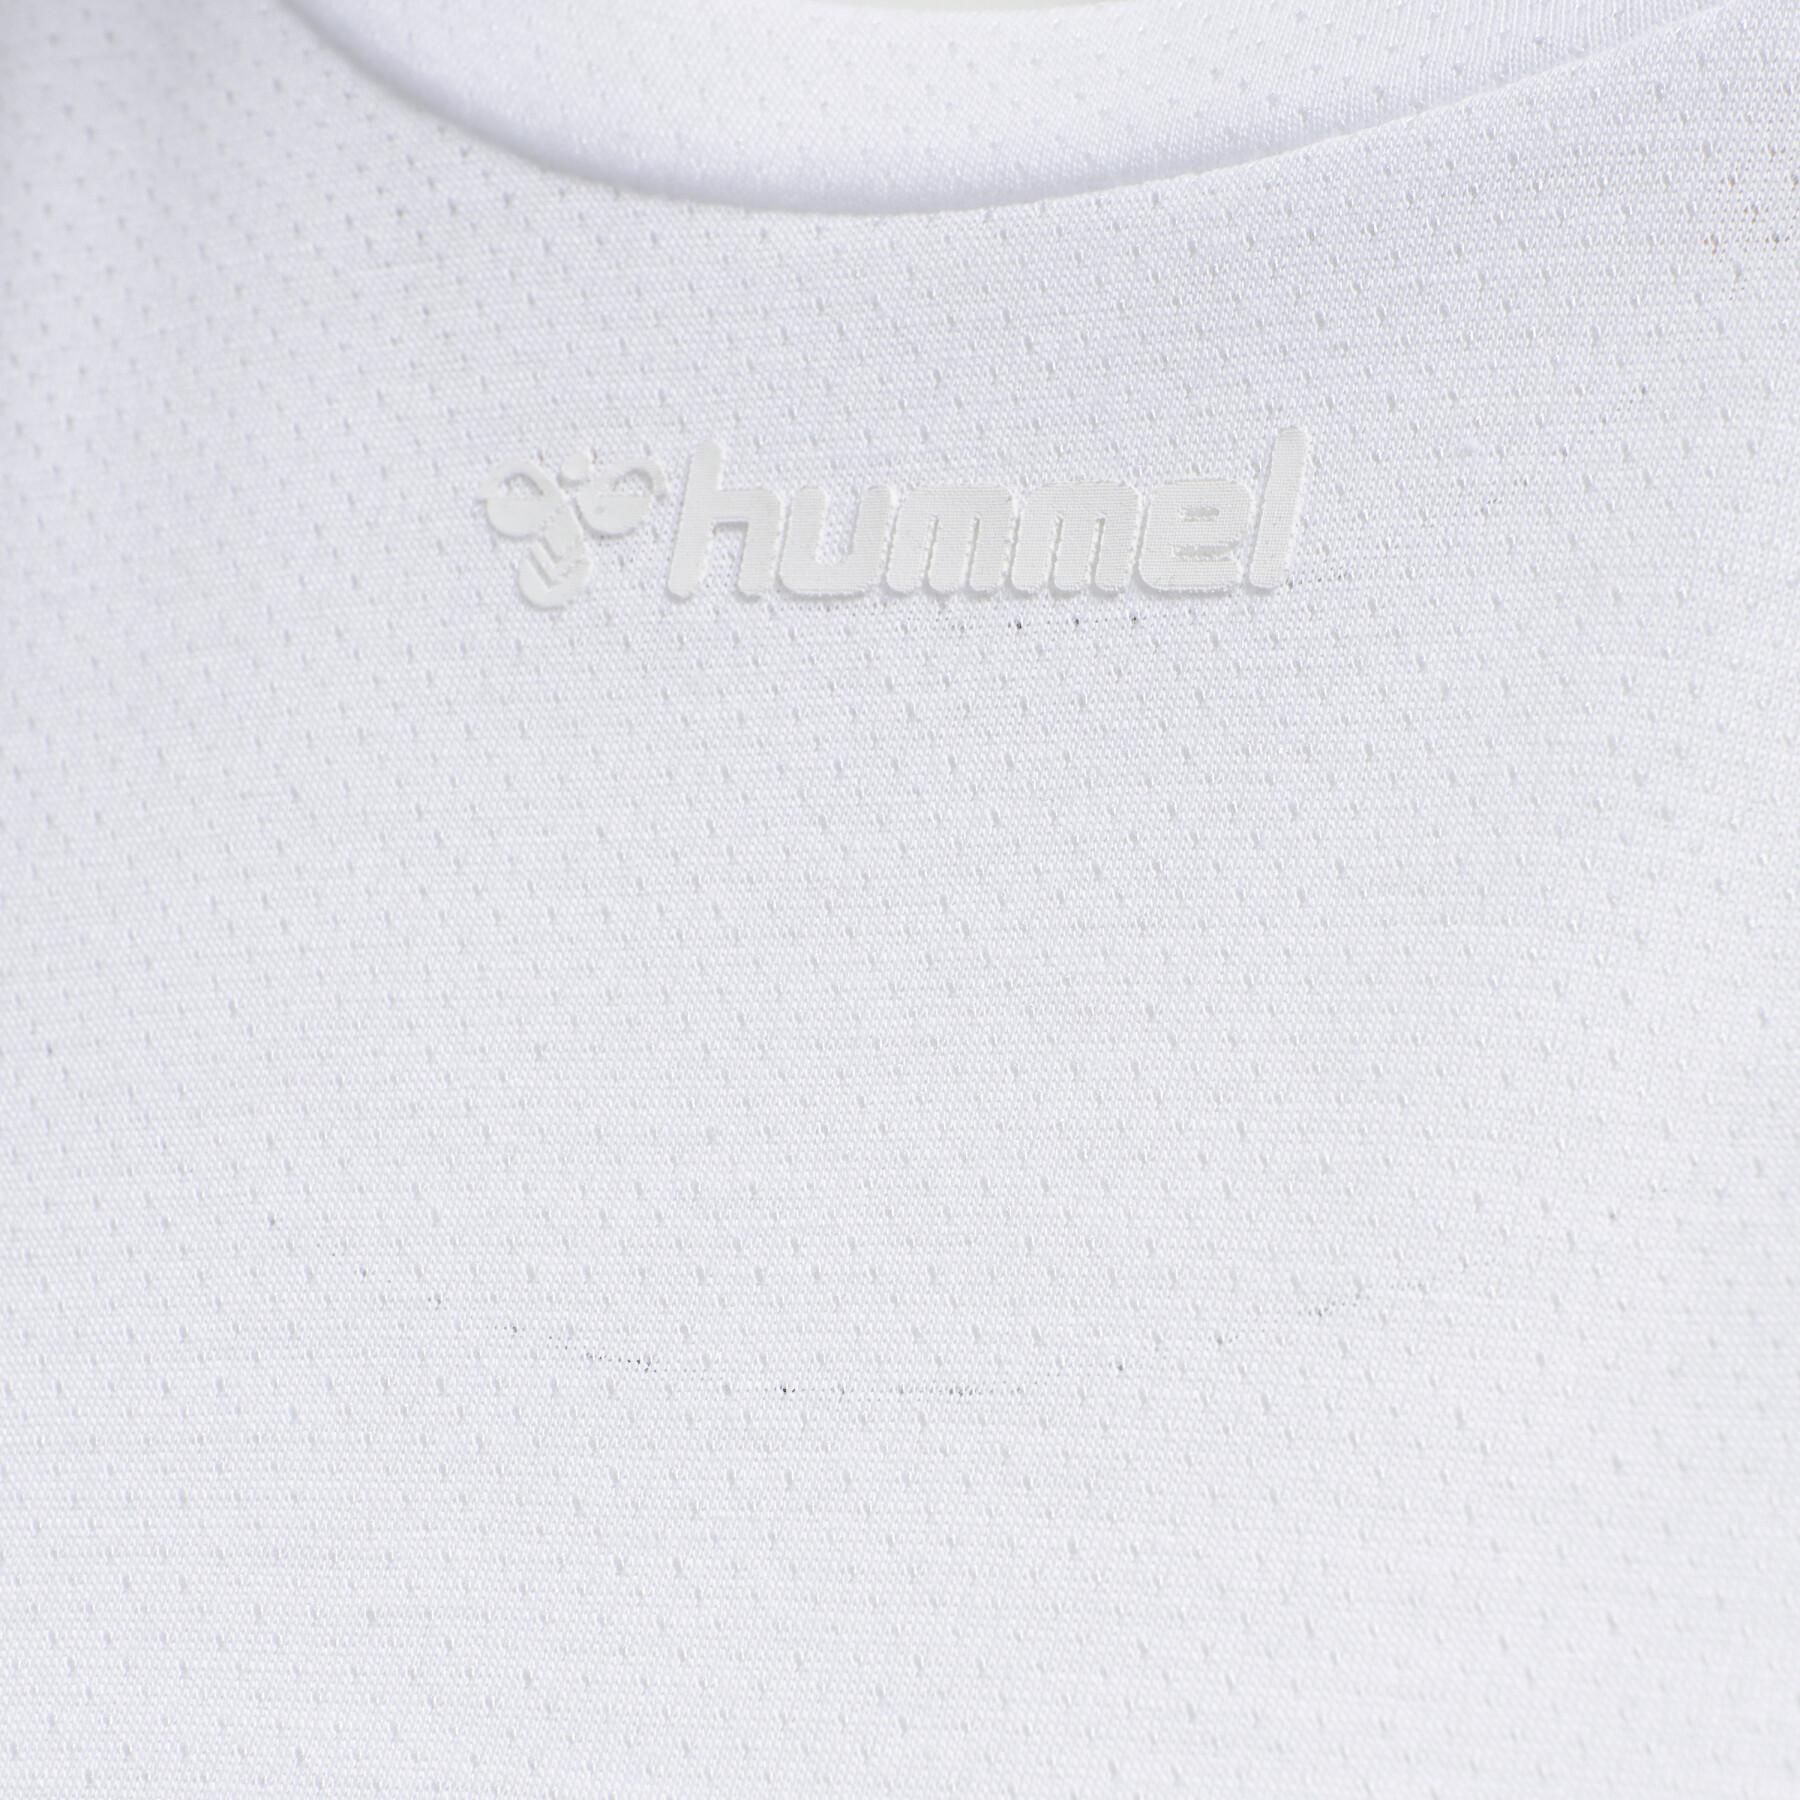 T-shirt de manga comprida feminina Hummel MT Vanja